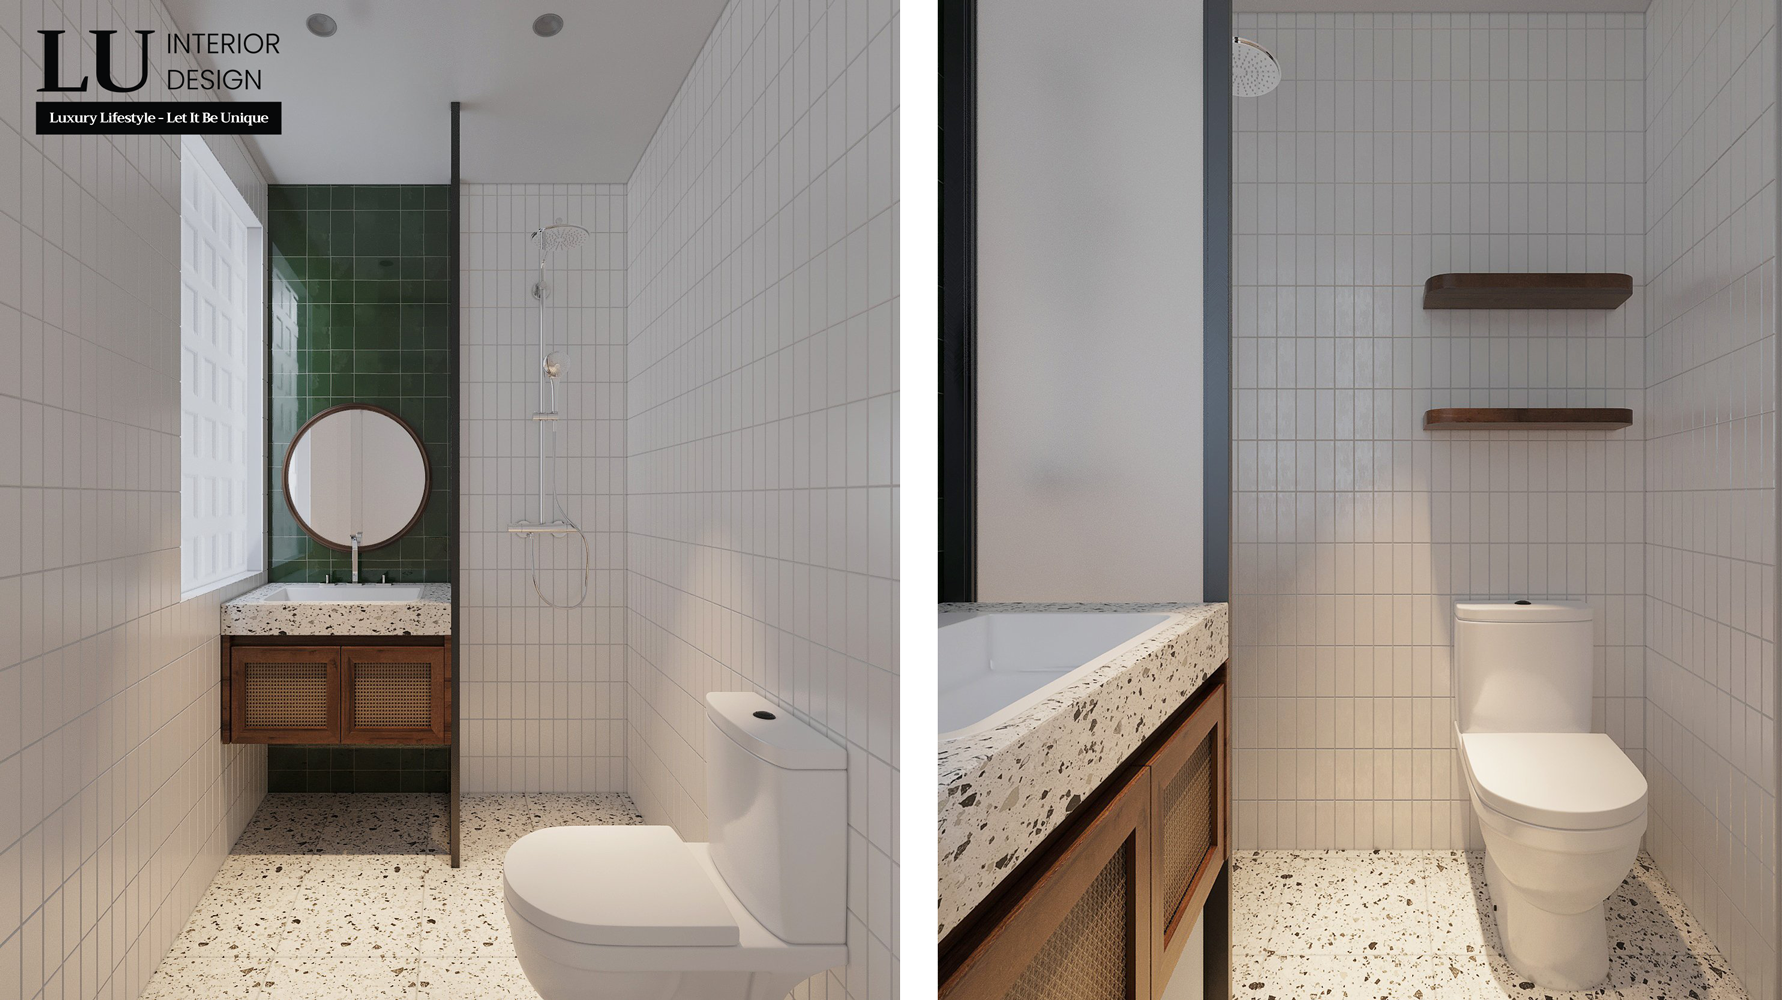 Tuy diện tích nhỏ, nhưng KTS vẫn thiết kế nhà tắm riêng trong phòng để đảm bảo tiện nghi. Ảnh: LU Design